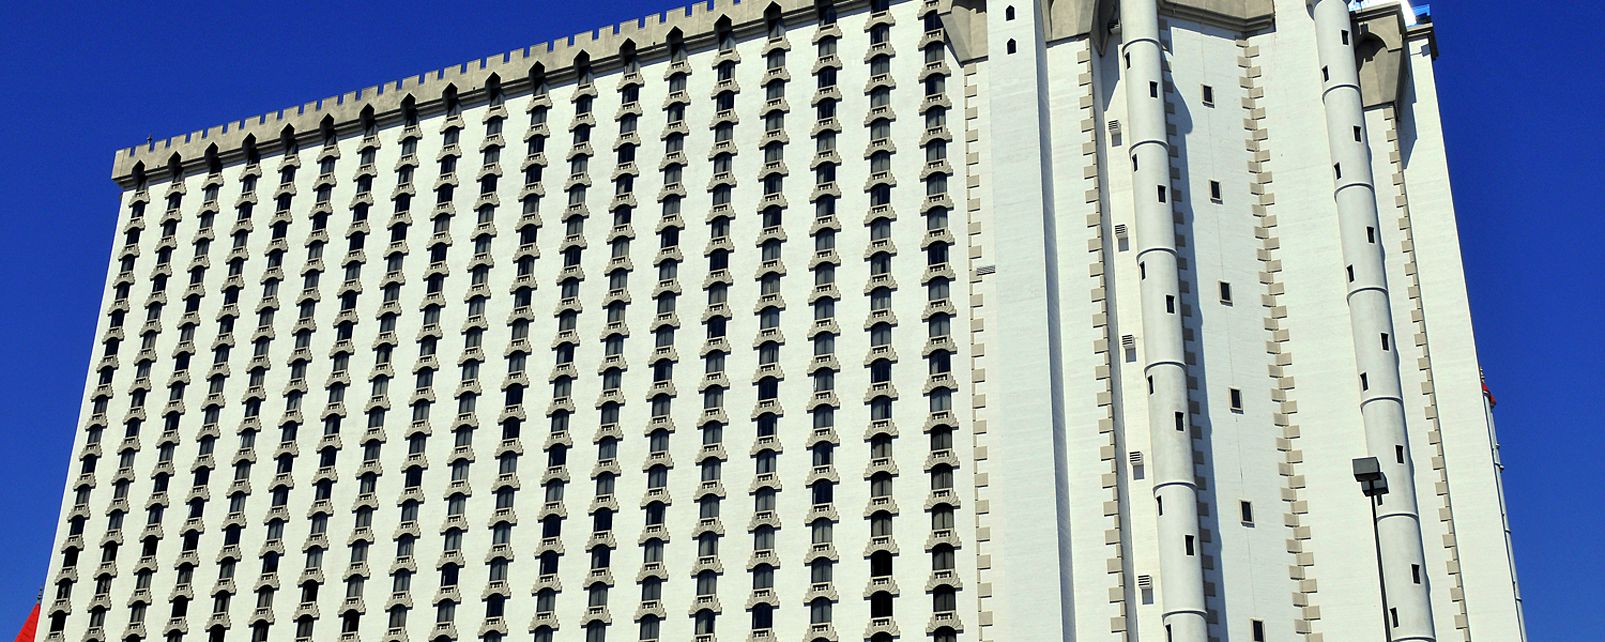 Hotel Excalibur Hotel Las Vegas